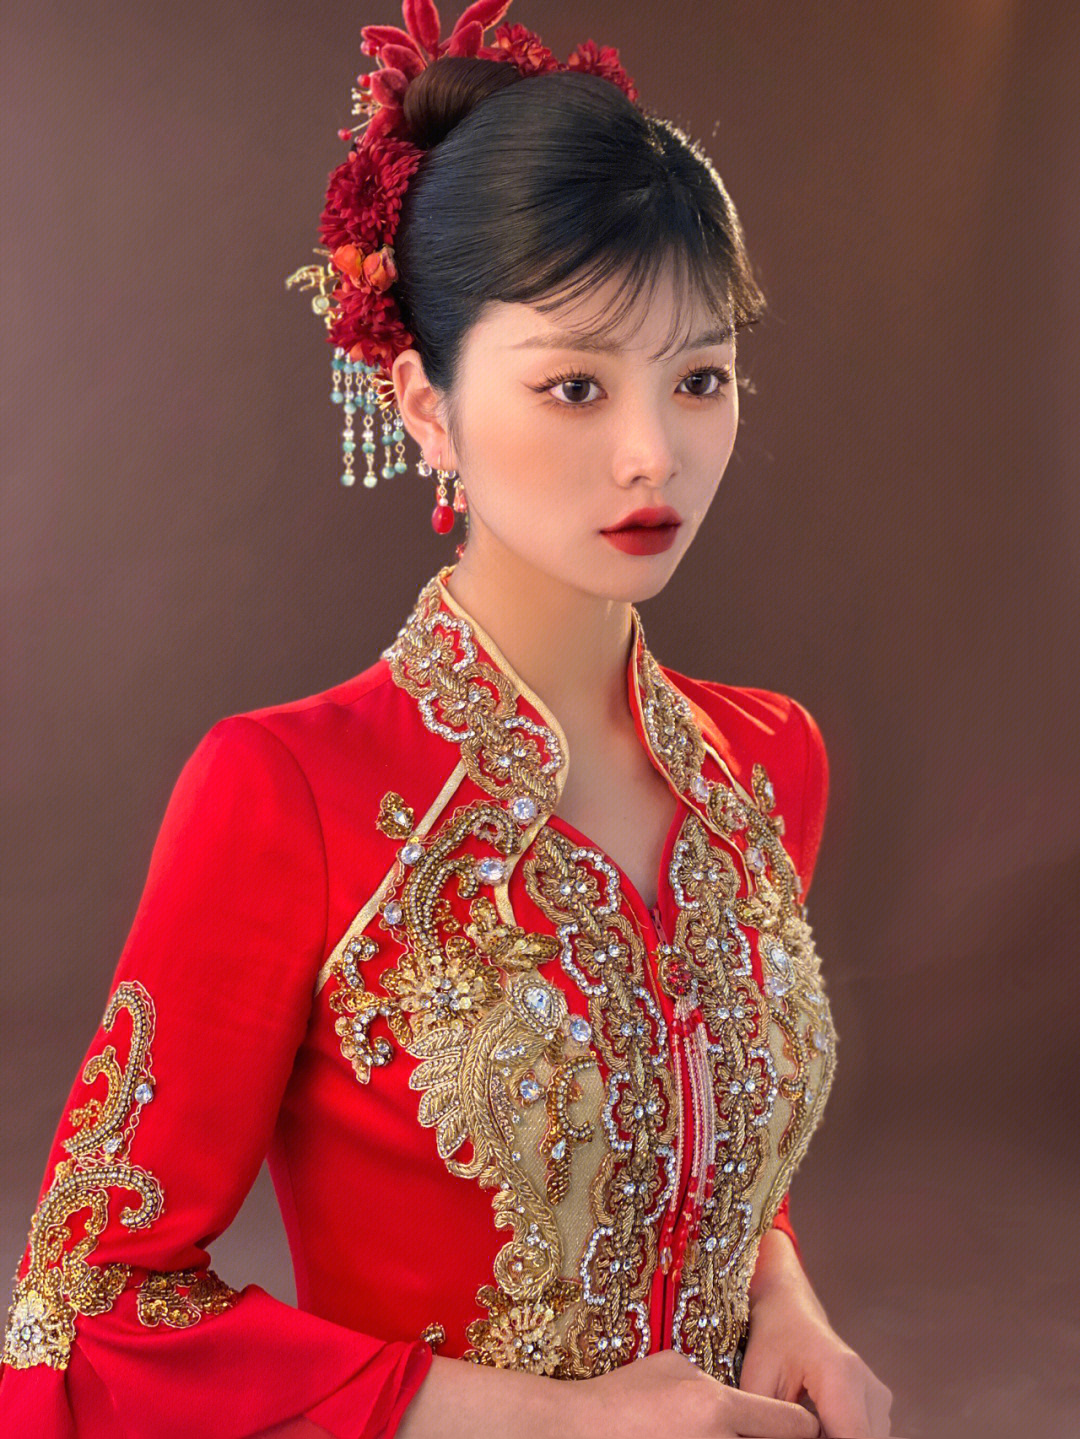 中式新娘造型新娘发型秀禾新娘发型